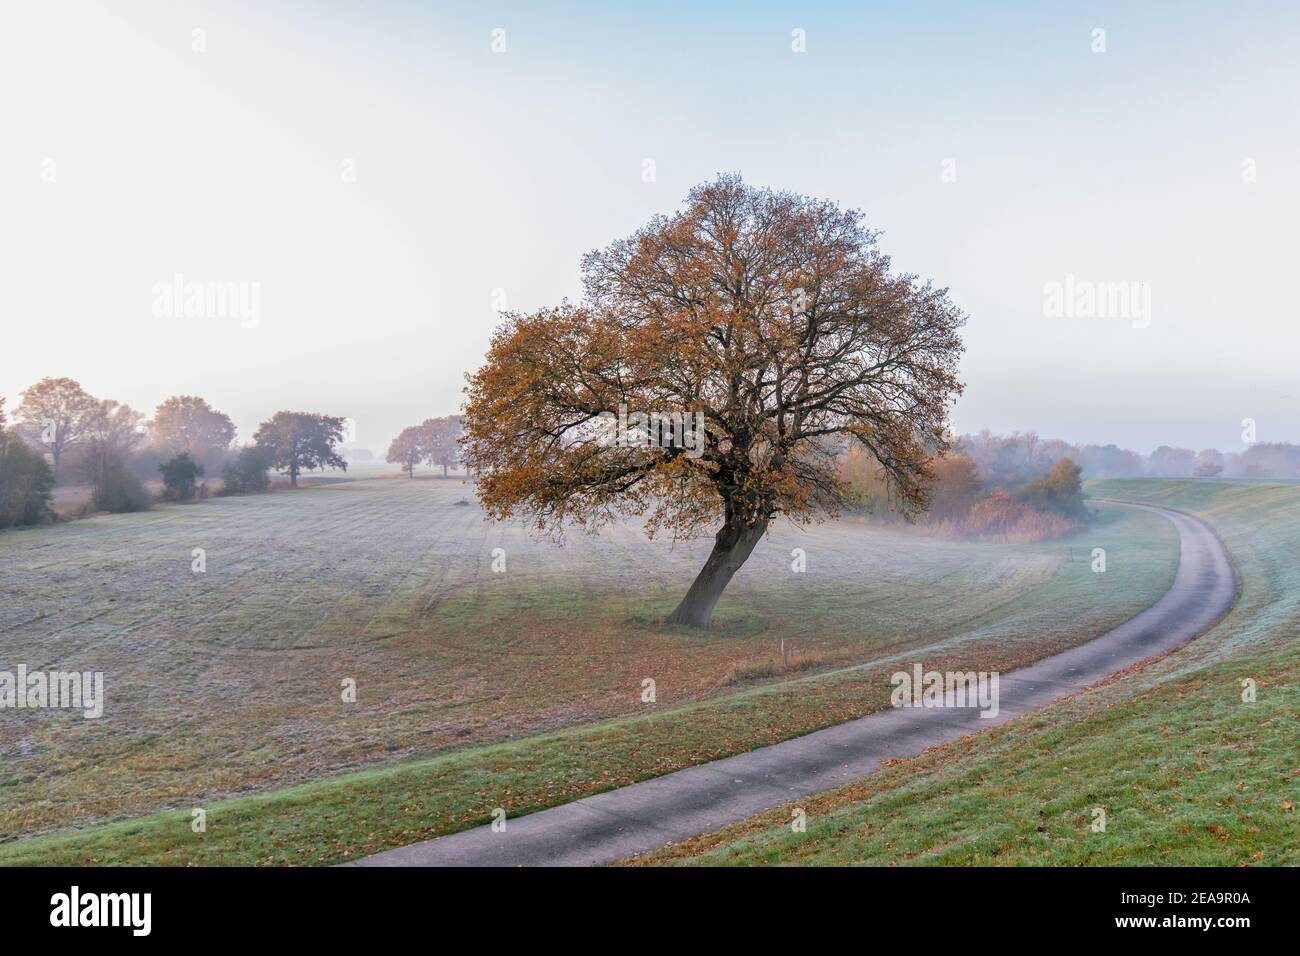 Eine einfarbige Buche mit herbstlichen Farben am frühen Morgen bei leichtem Nebel am Elbdeich bei Garlstorf, Niedersachsen/Lüneburg im Elbtal-Auengebiet Stockfoto